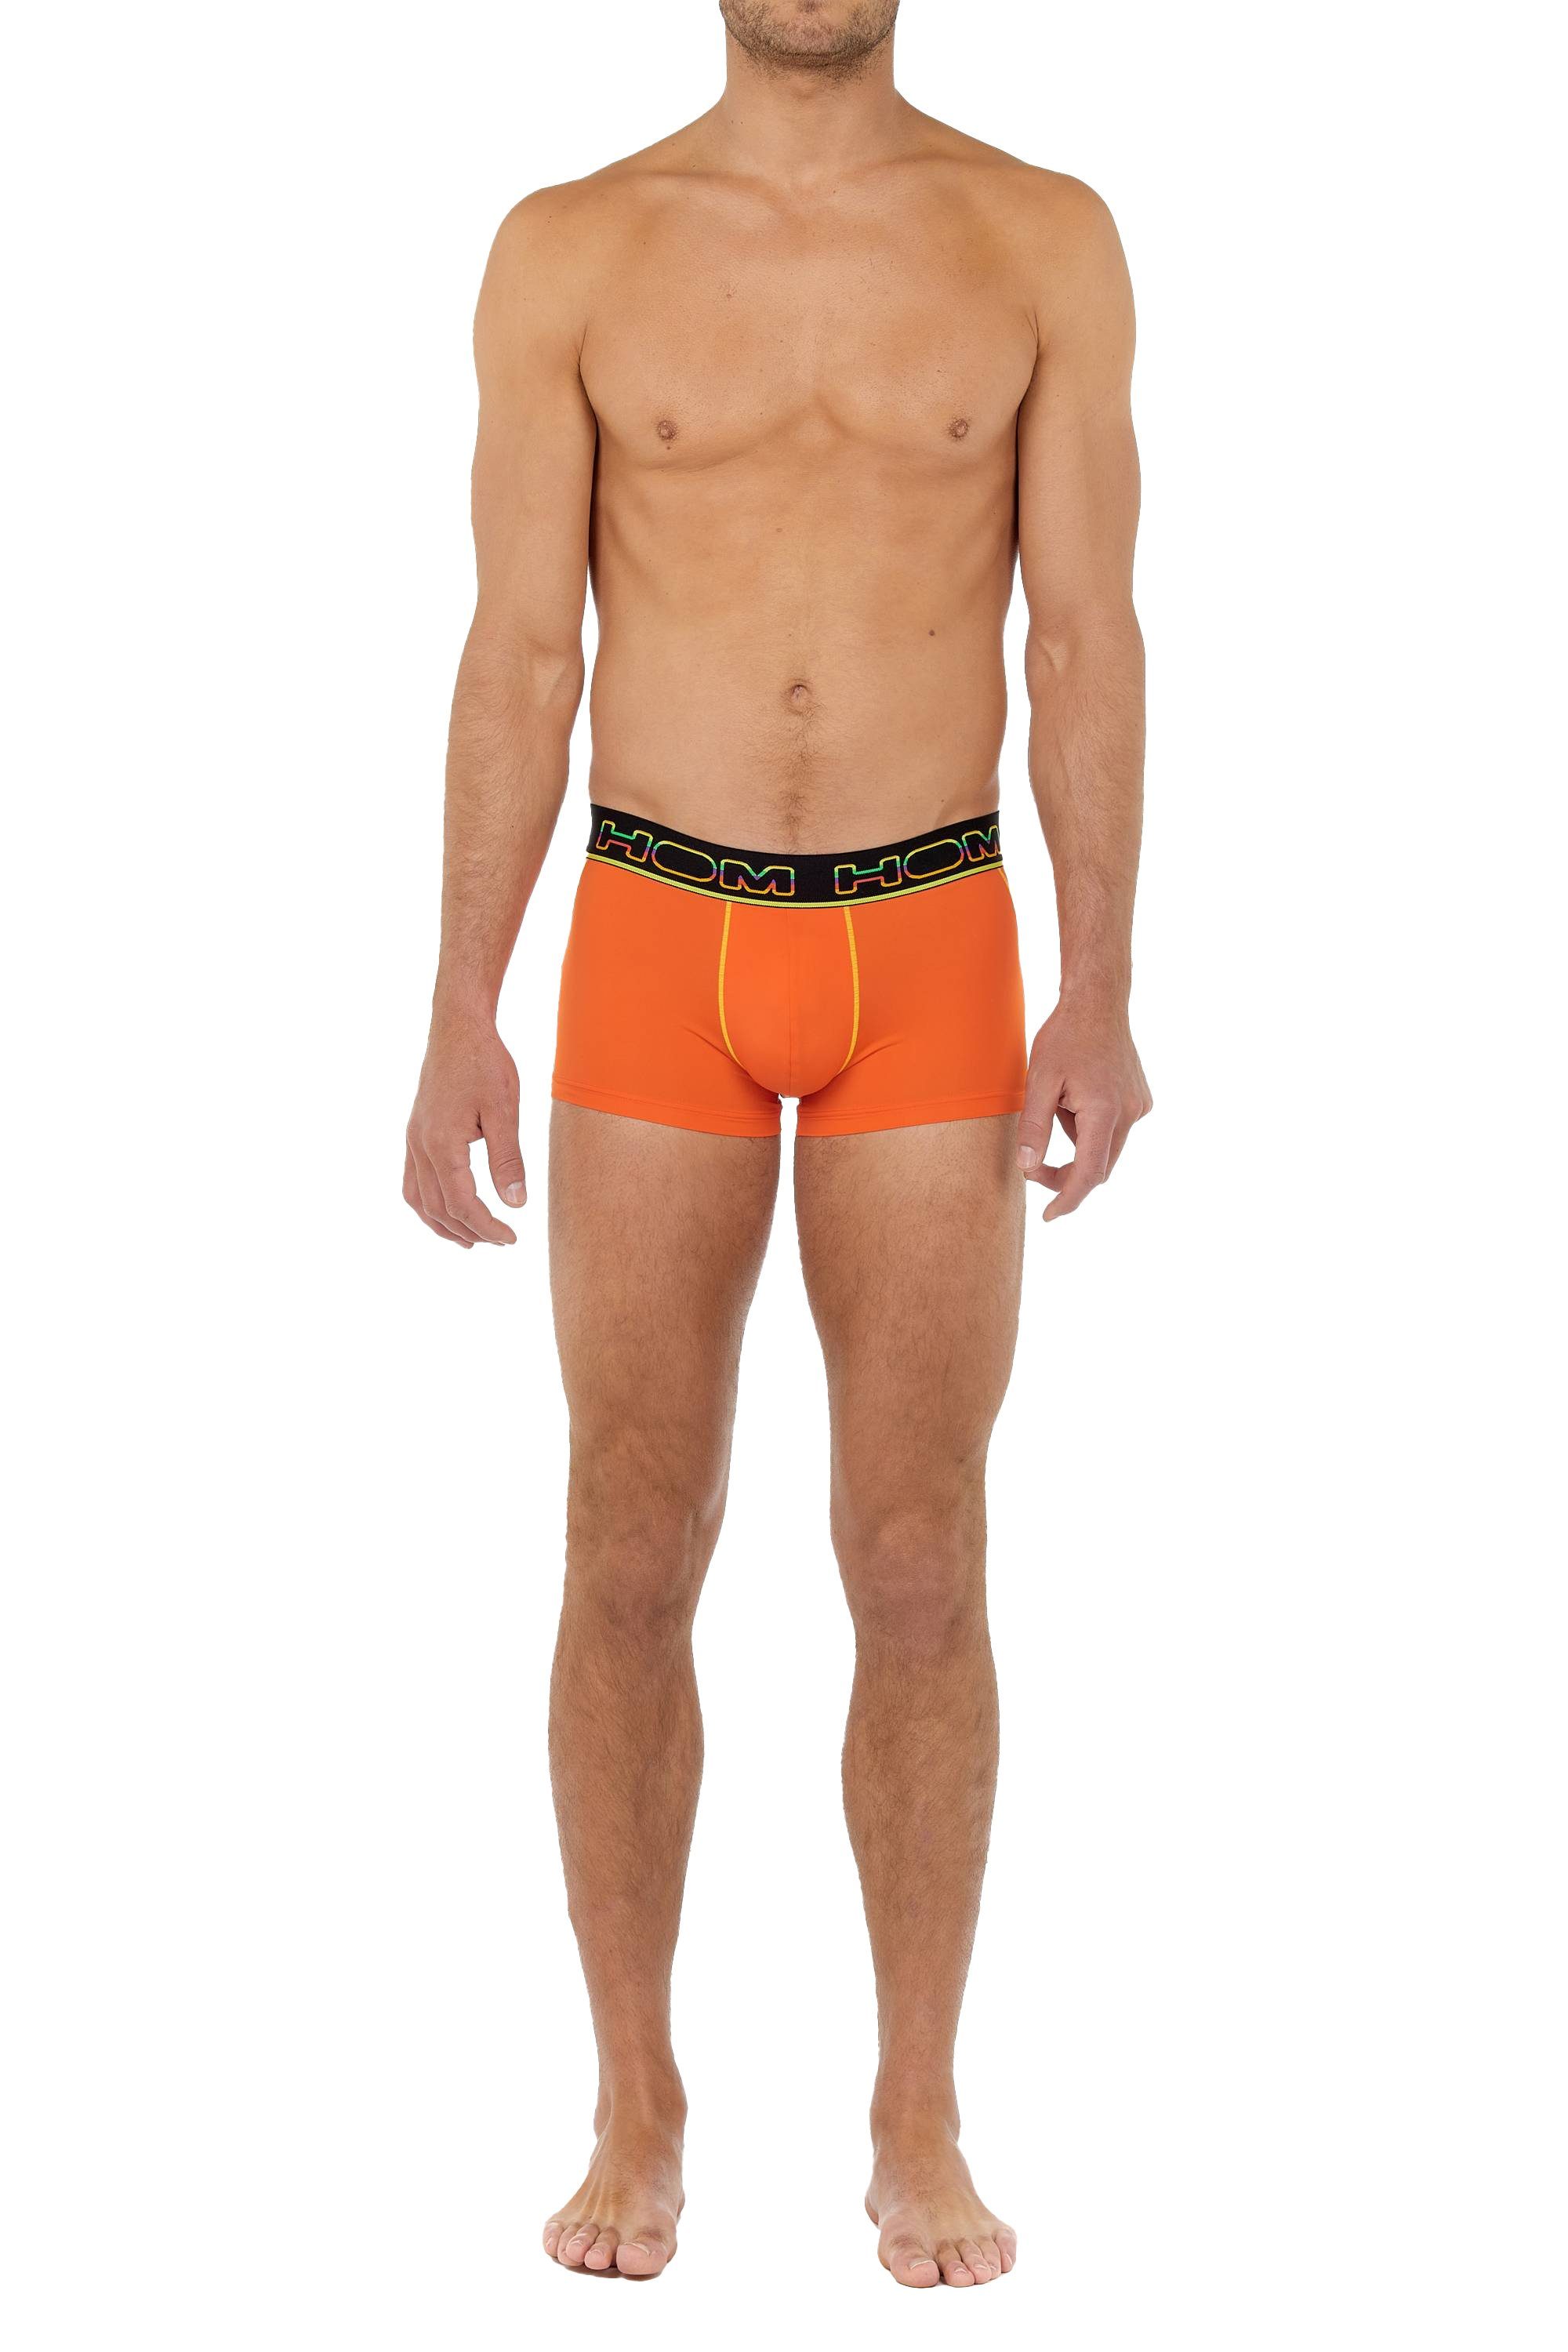 Pants, Trunks Herren Boxer Unterwäsche - Sport, Rainbow Hom Orange